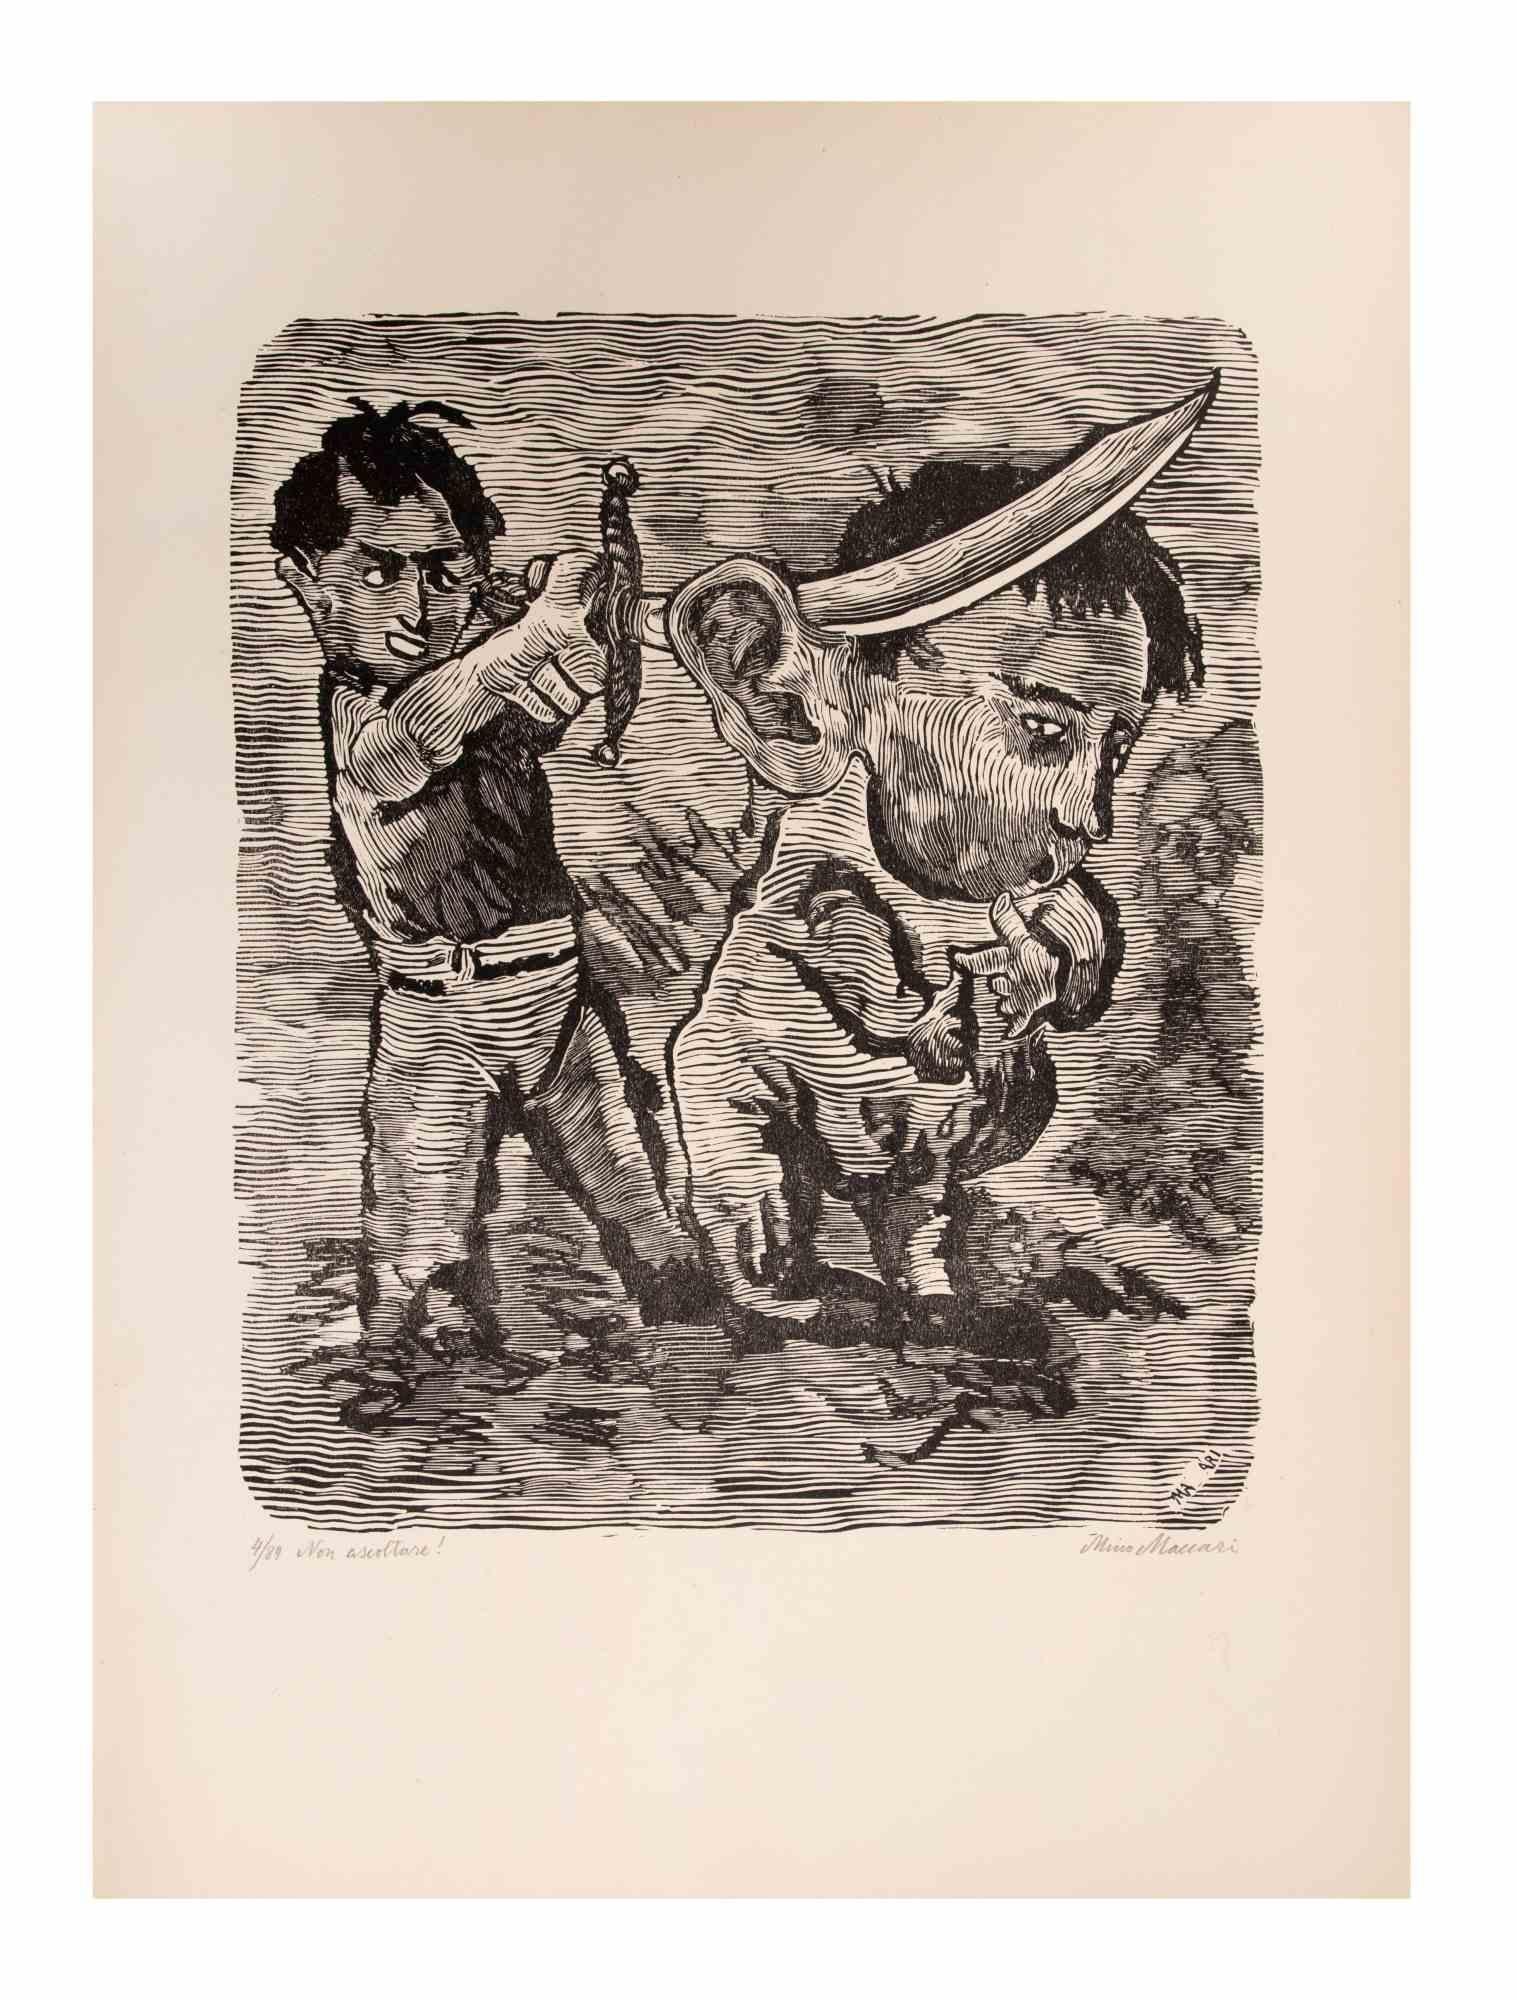 N'écoutez pas ! (Non ascoltare !) est une œuvre d'art réalisée par Mino Maccari (1924-1989) au milieu du XXe siècle.

Gravure sur bois B./W. sur papier. Signé à la main dans la partie inférieure, numéroté 4/89 exemplaires et titré dans la marge